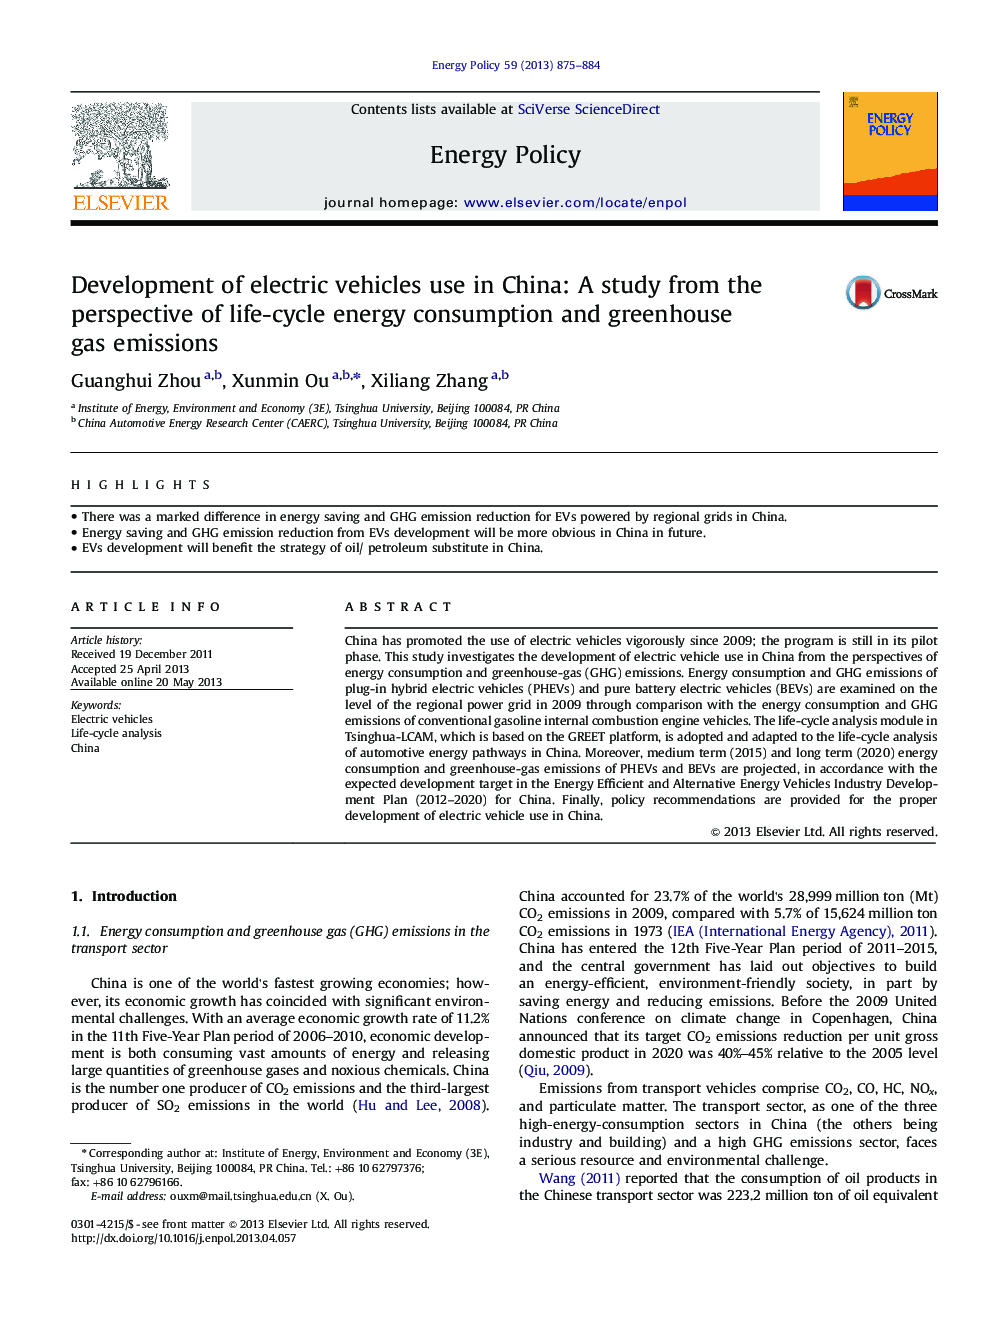 توسعه استفاده از وسایل نقلیه الکتریکی در چین: مطالعه از منظر مصرف انرژی و انتشار گازهای گلخانه ای 